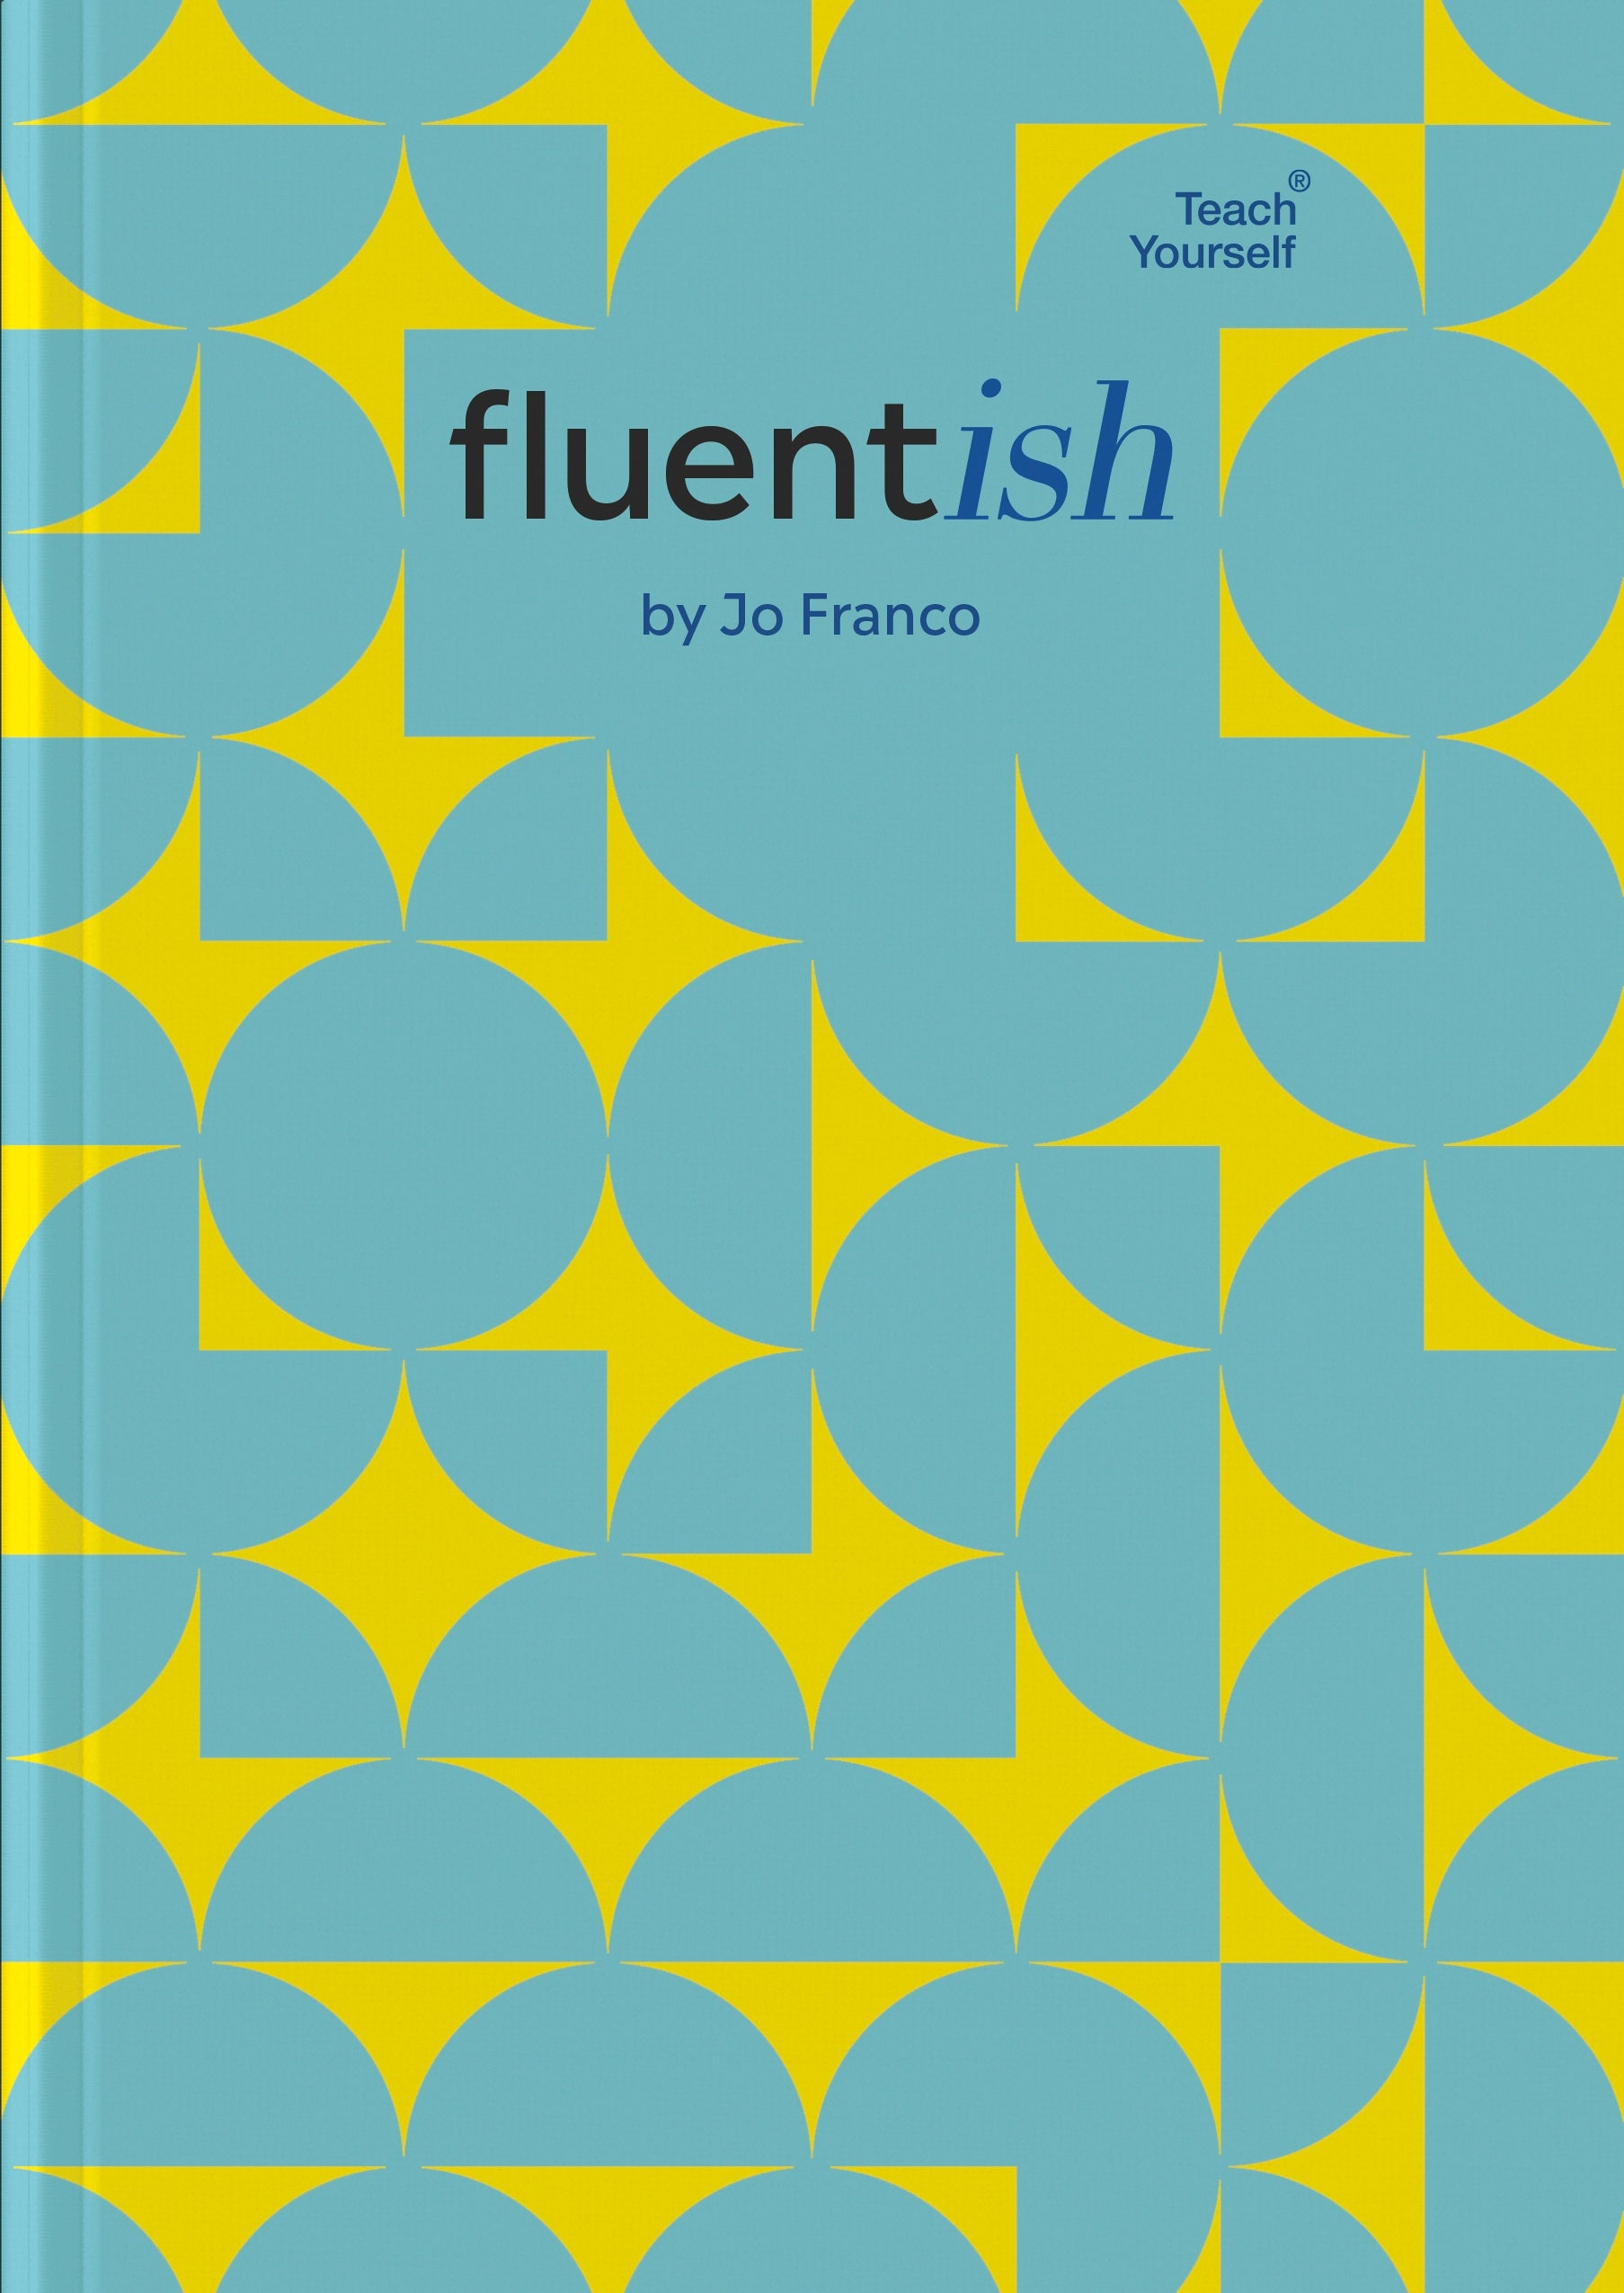 Fluentish by Jo Franco